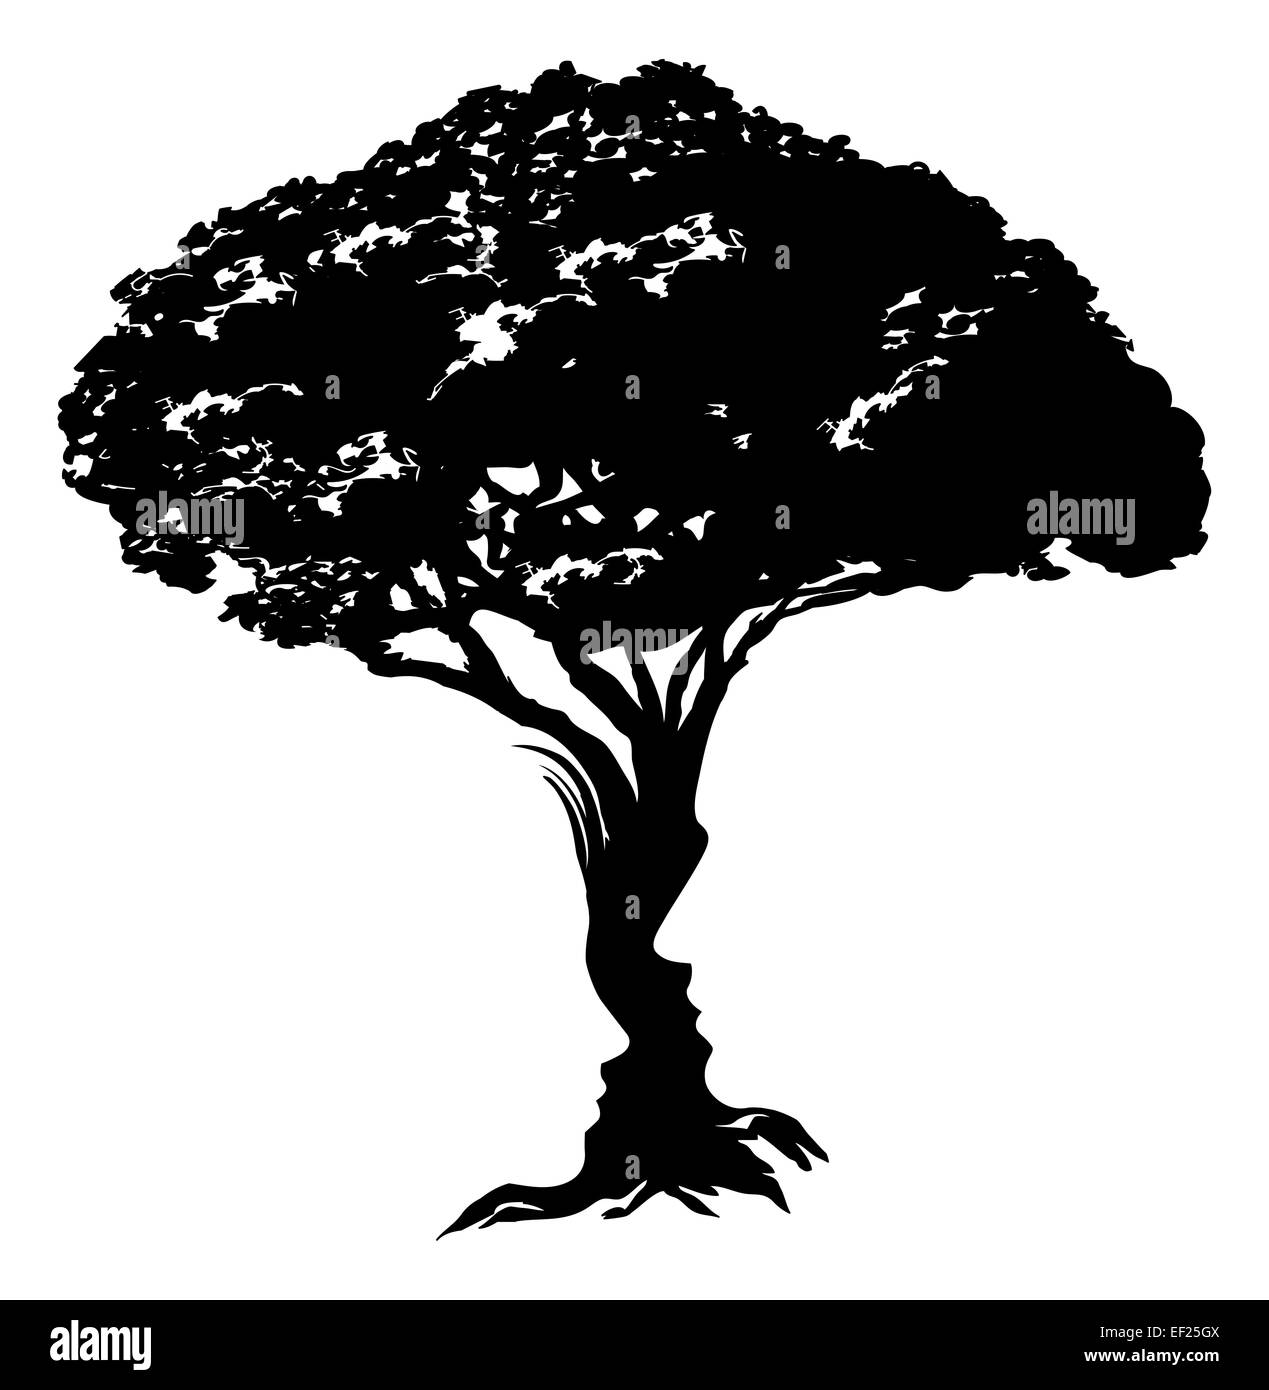 Une illustration d'un arbre abstrait illusion optique constitué d'un homme et de womans face concept design Banque D'Images